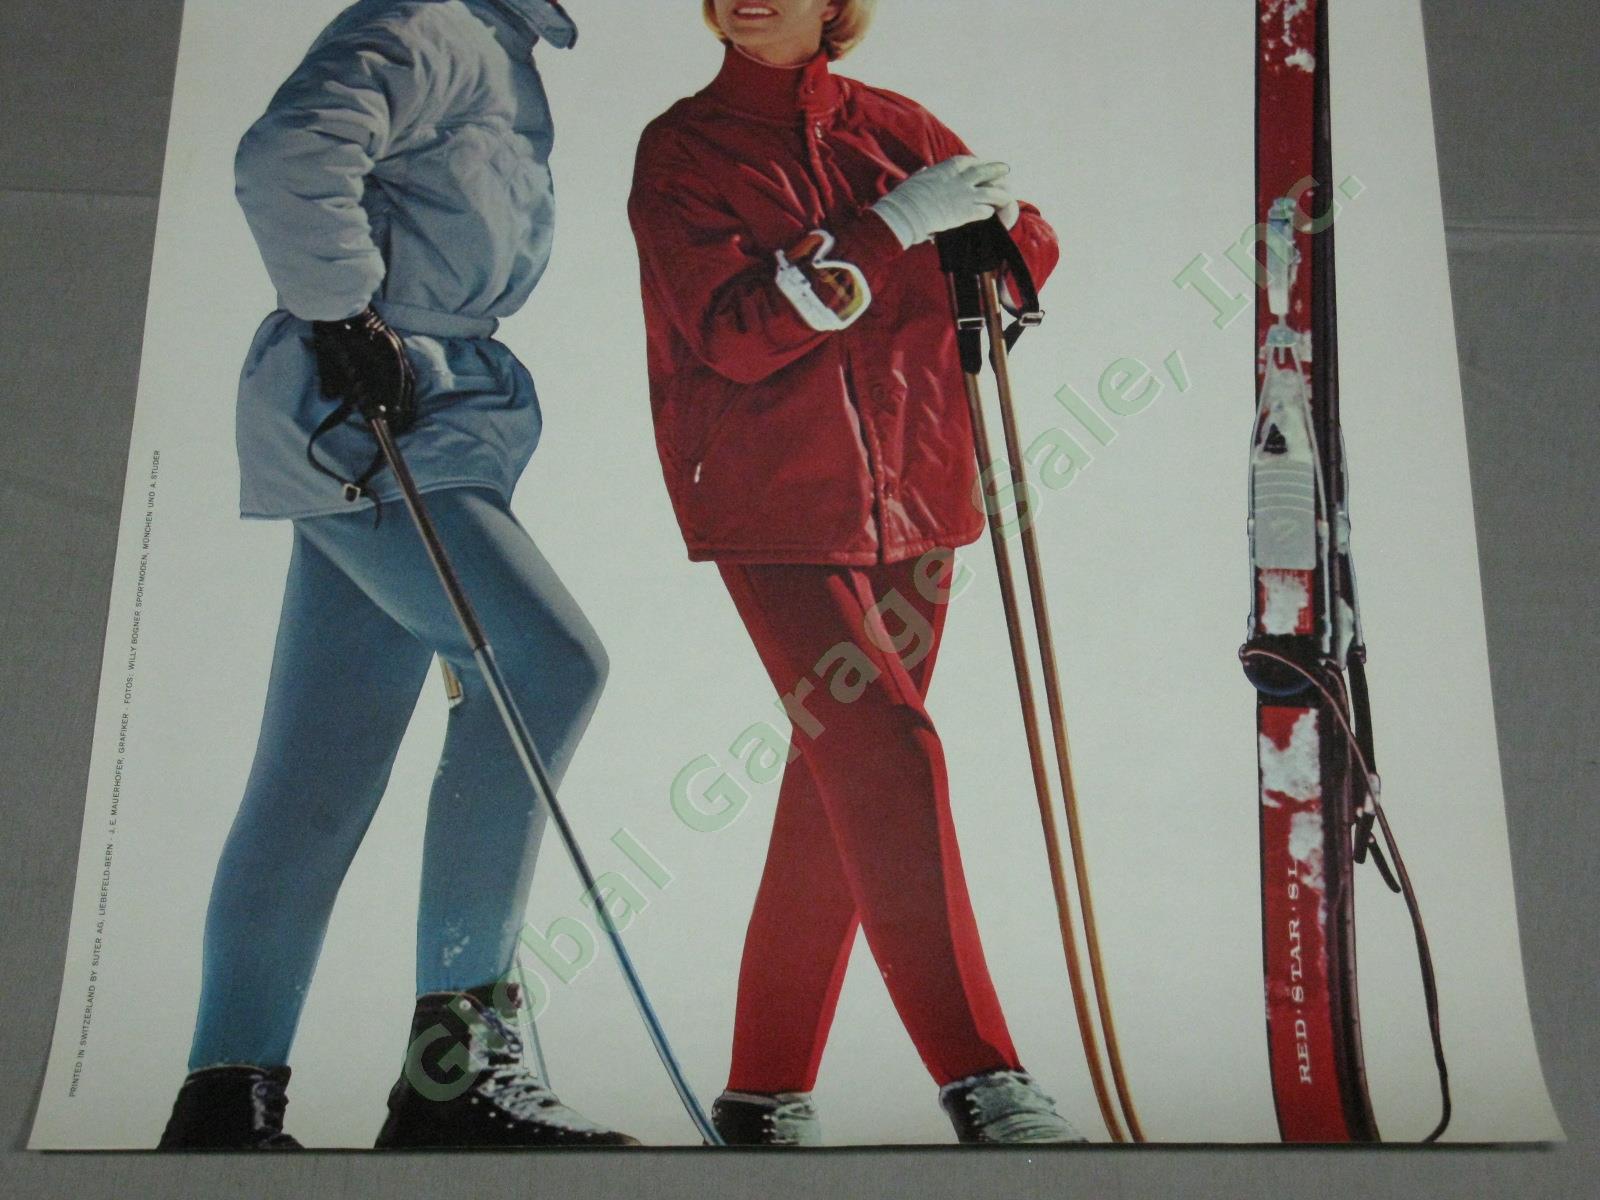 Vtg 1960s Swiss Travel Ski Poster Grindelwald First Bogner Clothing Switzerland 2